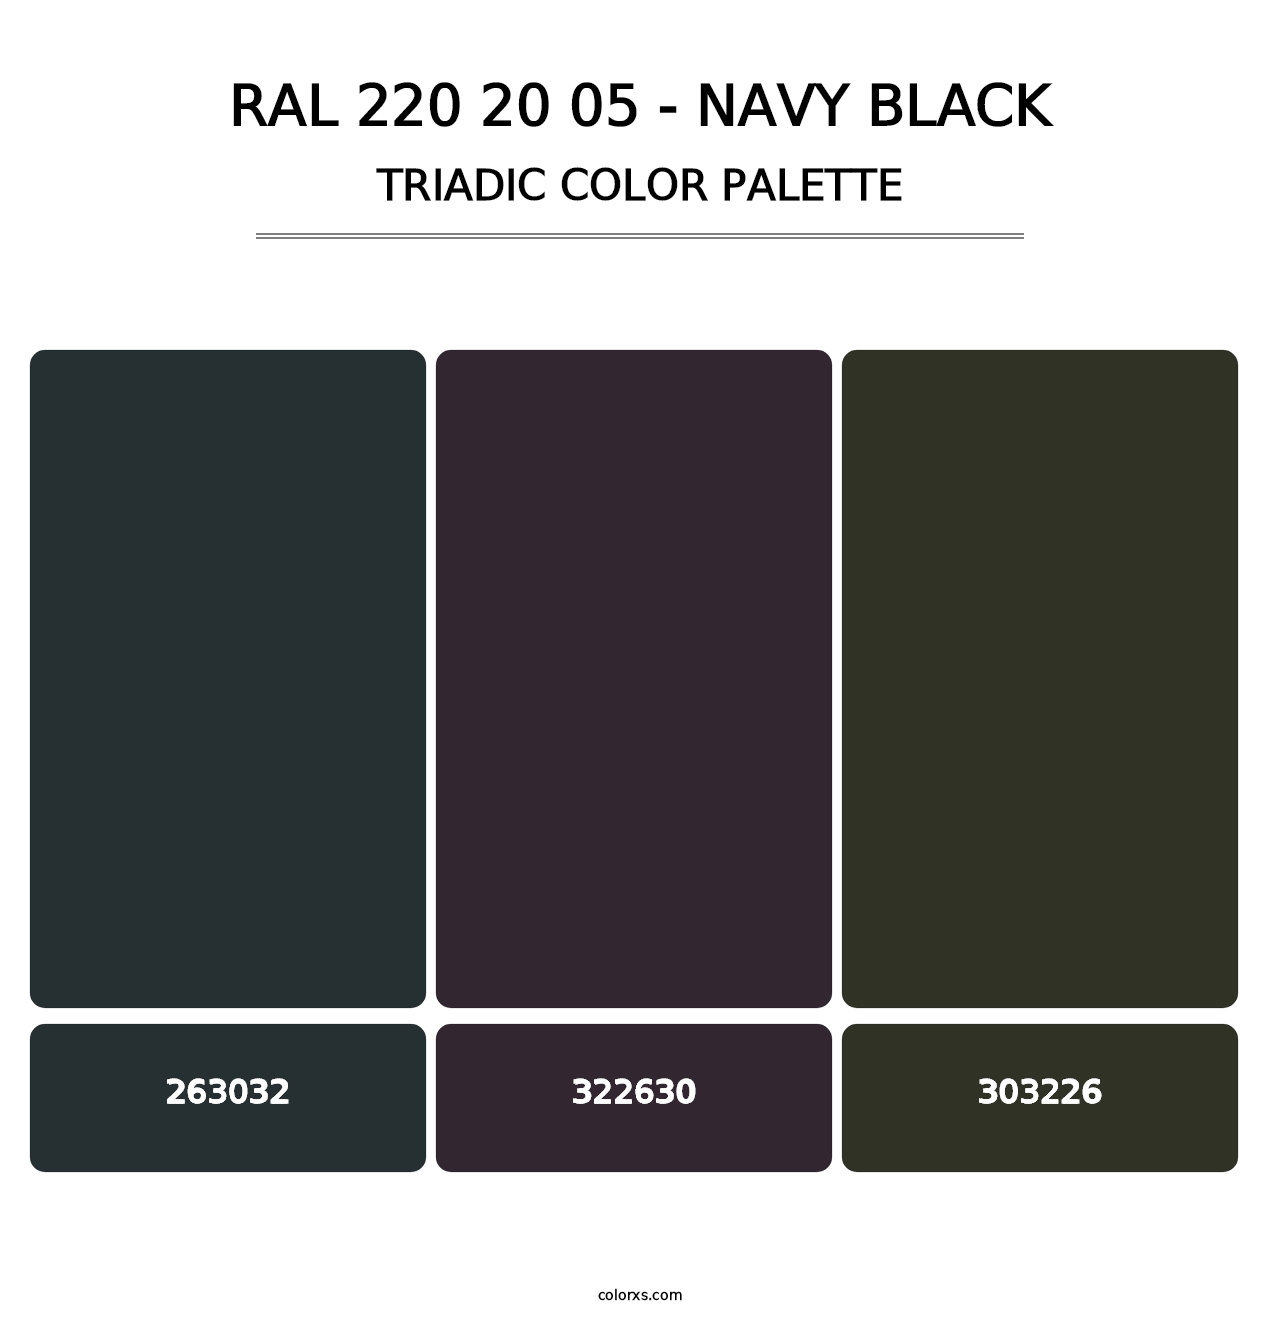 RAL 220 20 05 - Navy Black - Triadic Color Palette